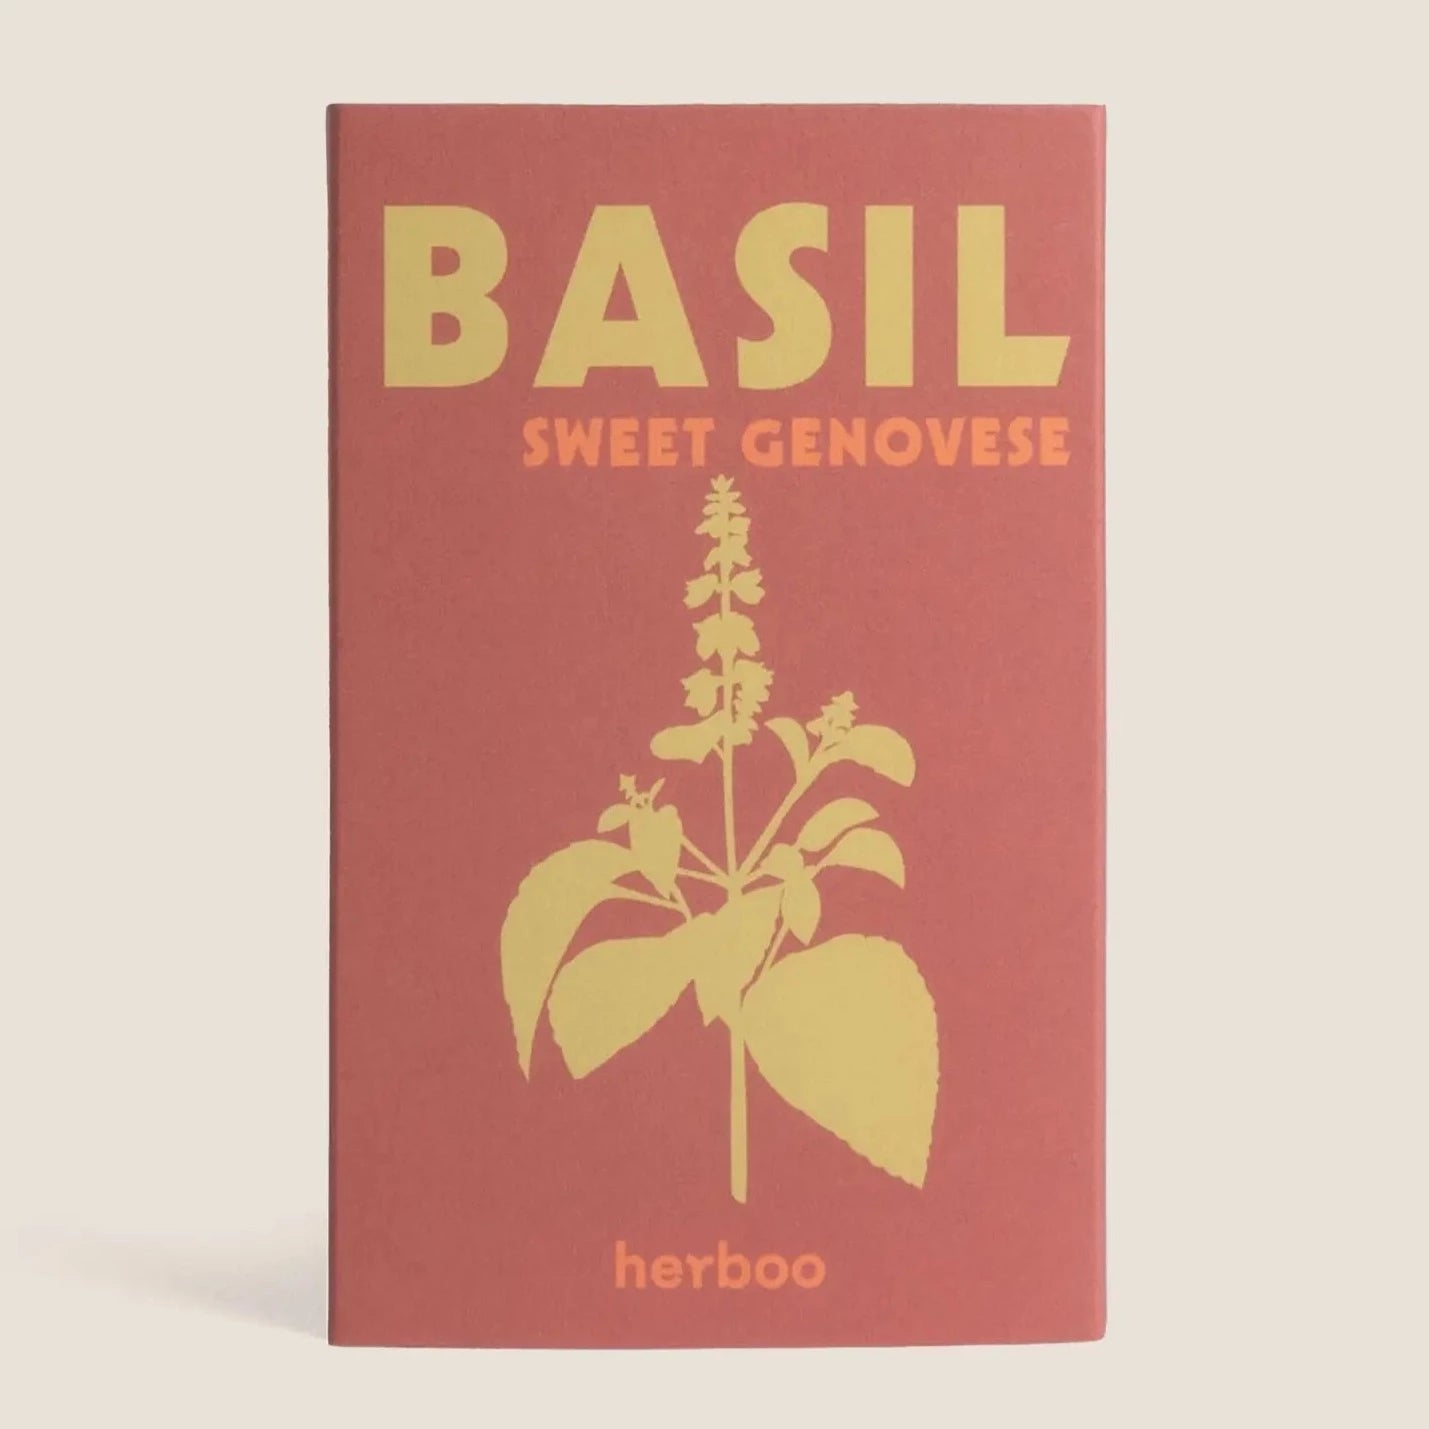 Basil 'Sweet Genovese' Seeds